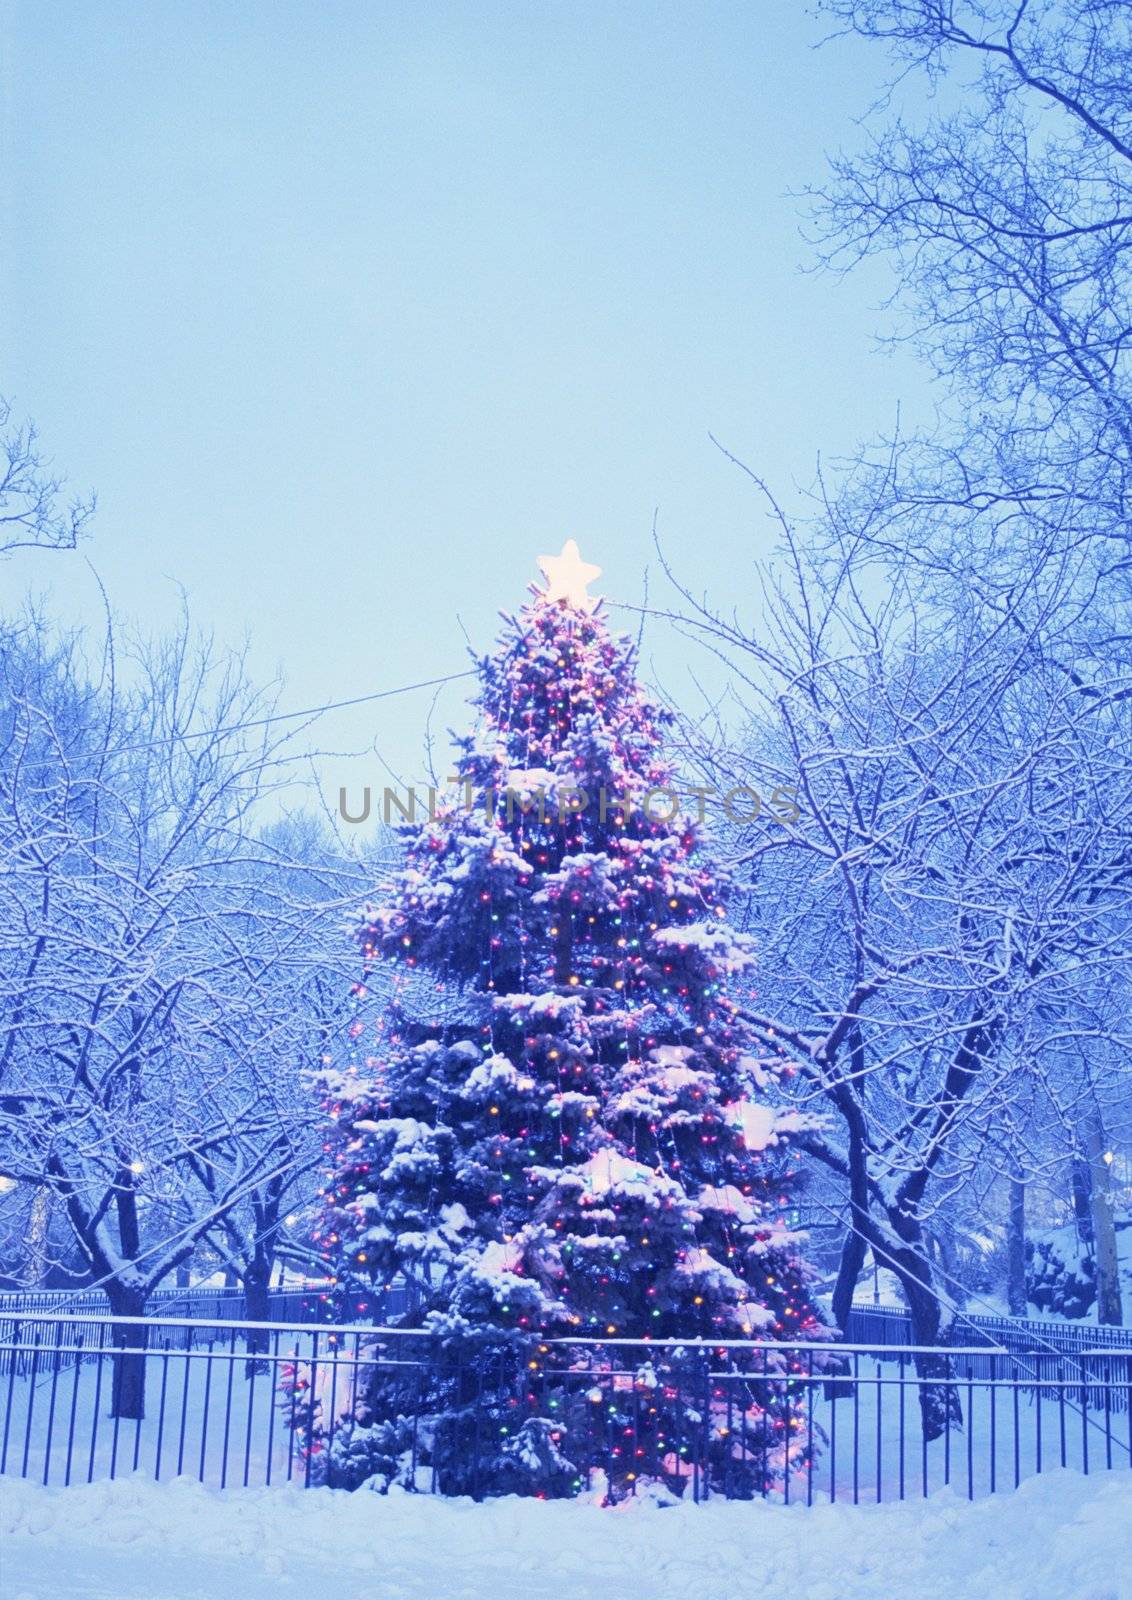 Christmas-tree by Baltus